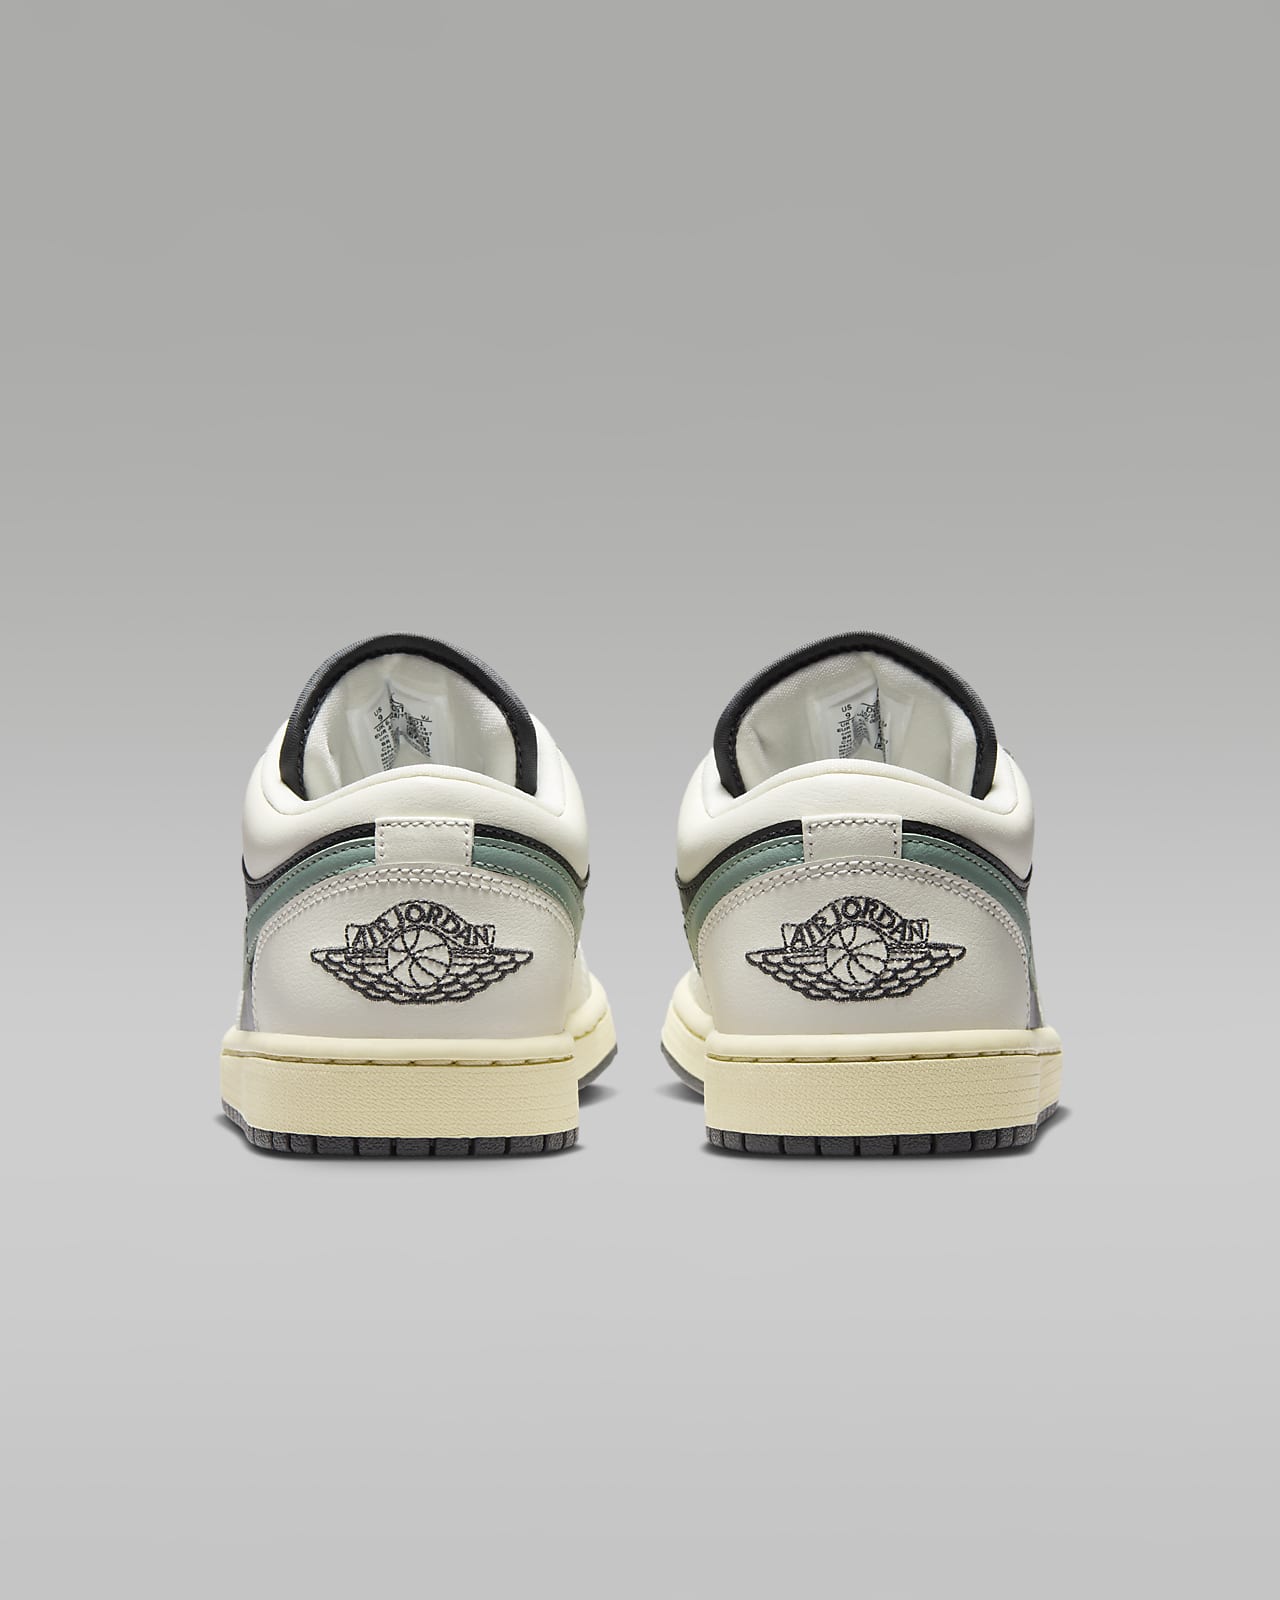 Air Jordan 1 Low Women's Shoes. Nike UK